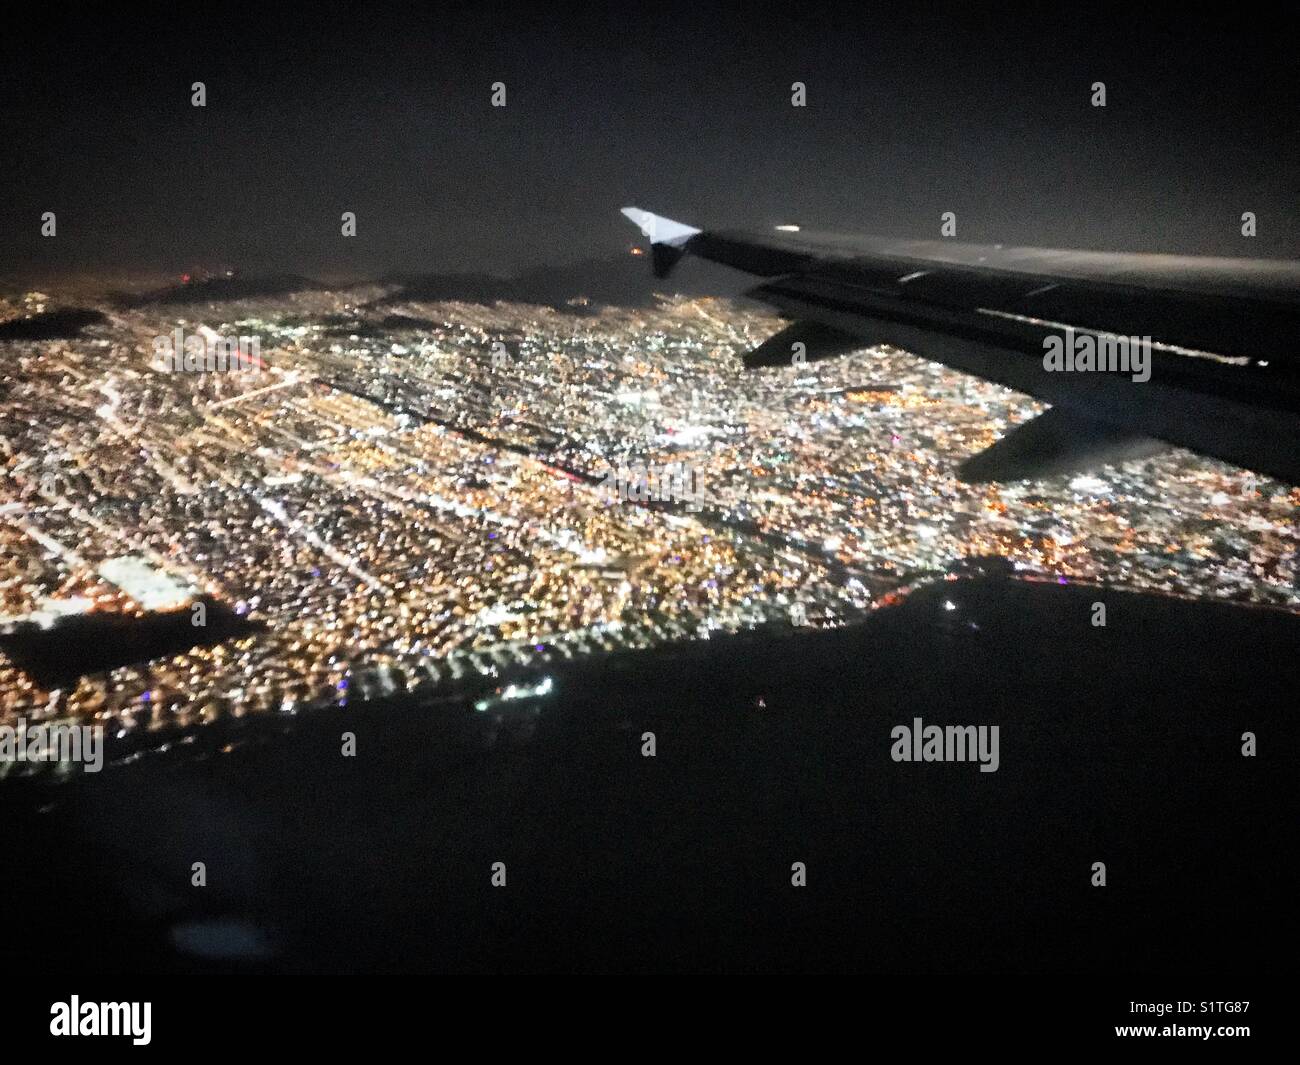 A plane flies over Mexico City, Mexico. Stock Photo